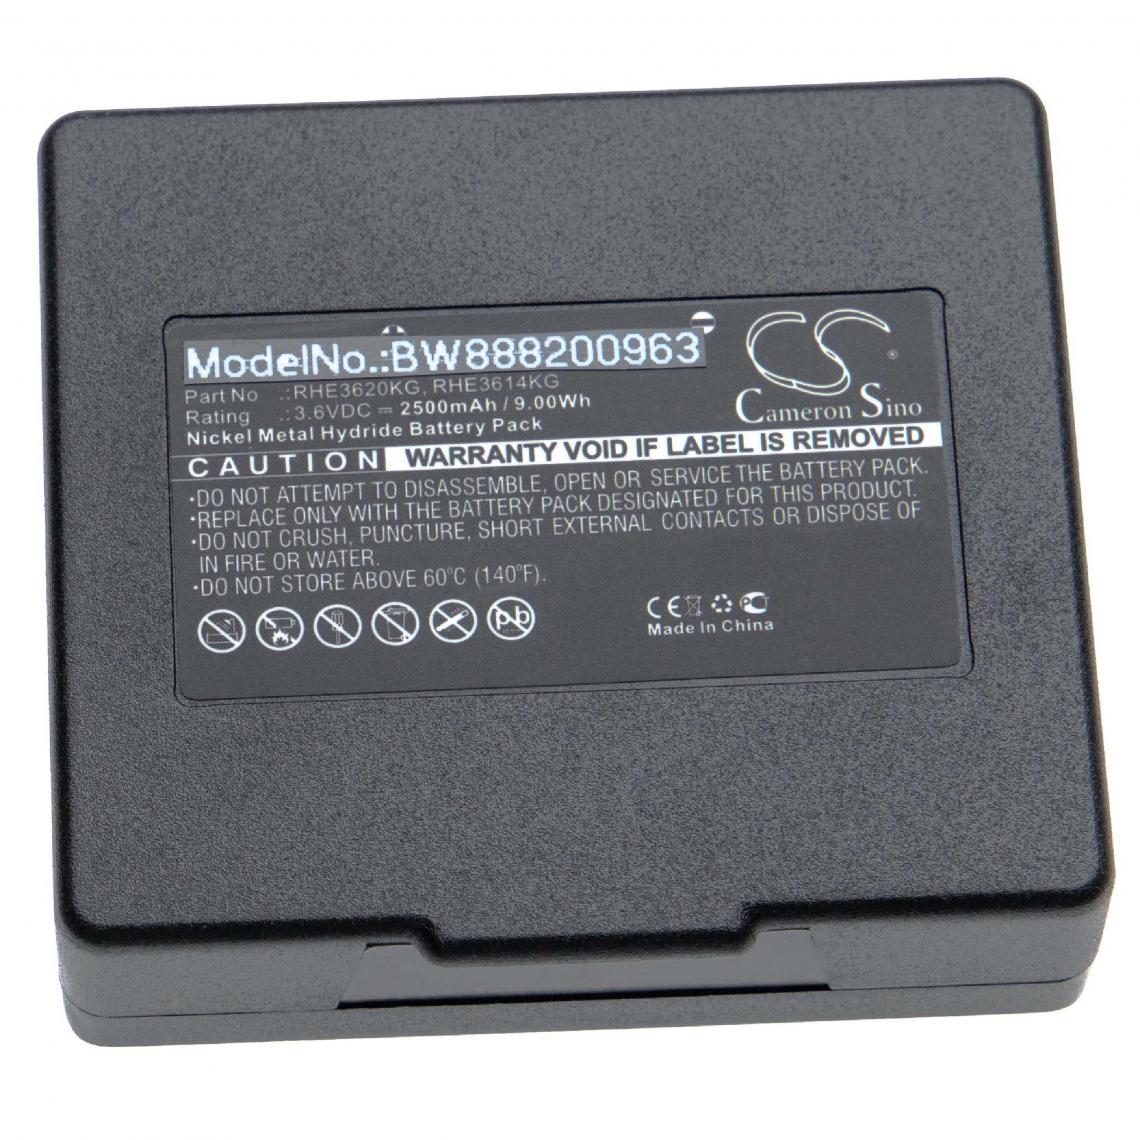 Vhbw - vhbw batterie remplace Abitron KH68300990.A pour télécommande remote control (2500mAh, 3.6V, NiMH) - Autre appareil de mesure